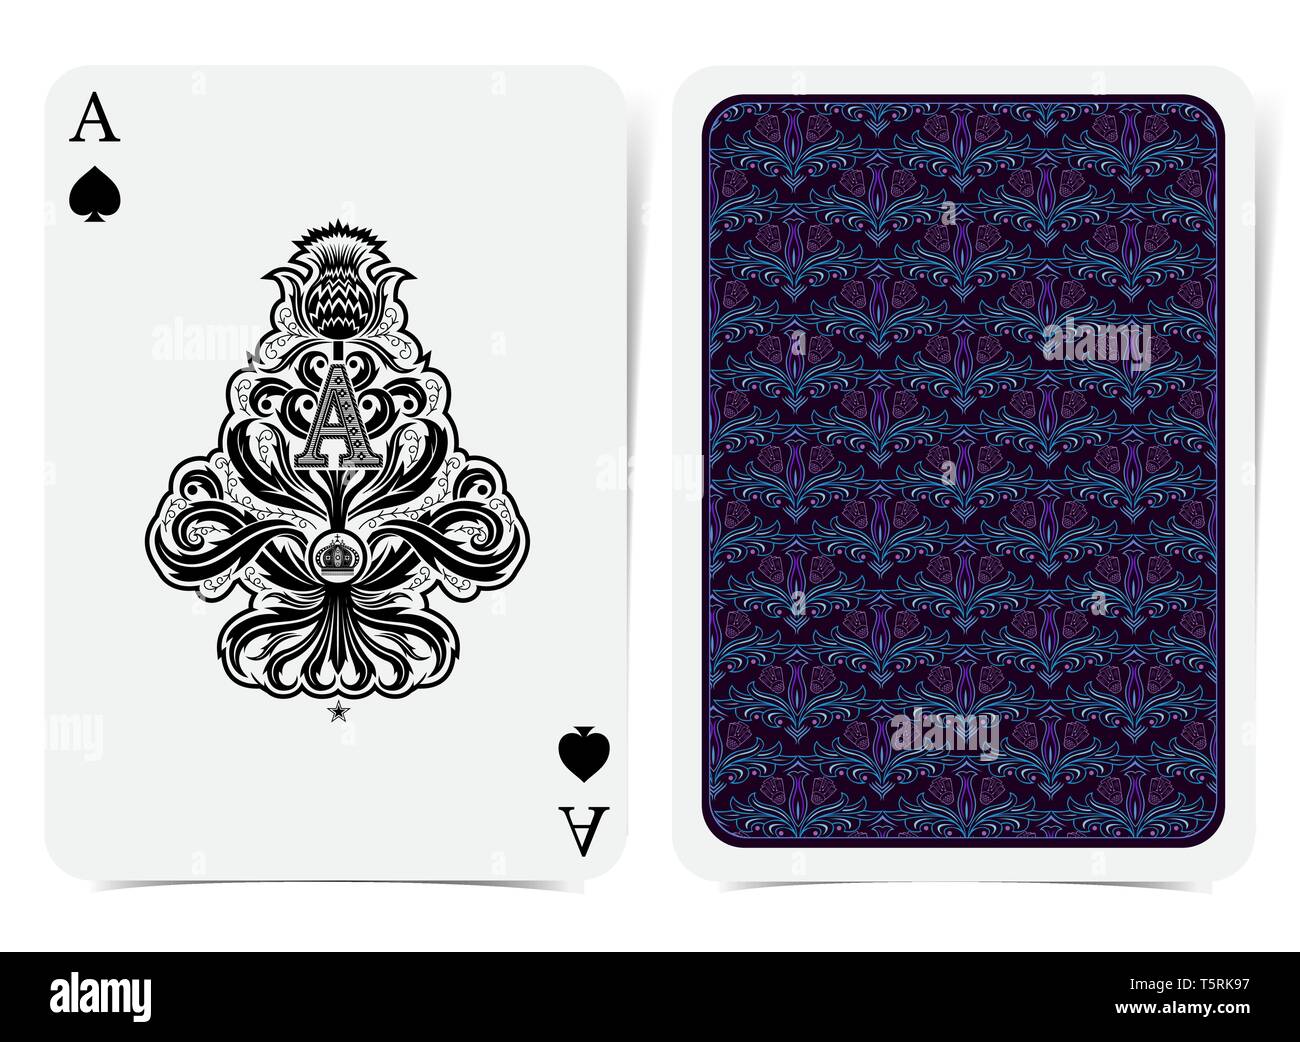 Ace of Spades Gesicht mit Distel pflanze Muster mit dem Anfangsbuchstaben A  nach innen und zurück mit Blau Violett florale Muster auf dunklen Anzug.  Vektor Karte Vorlage Stock-Vektorgrafik - Alamy